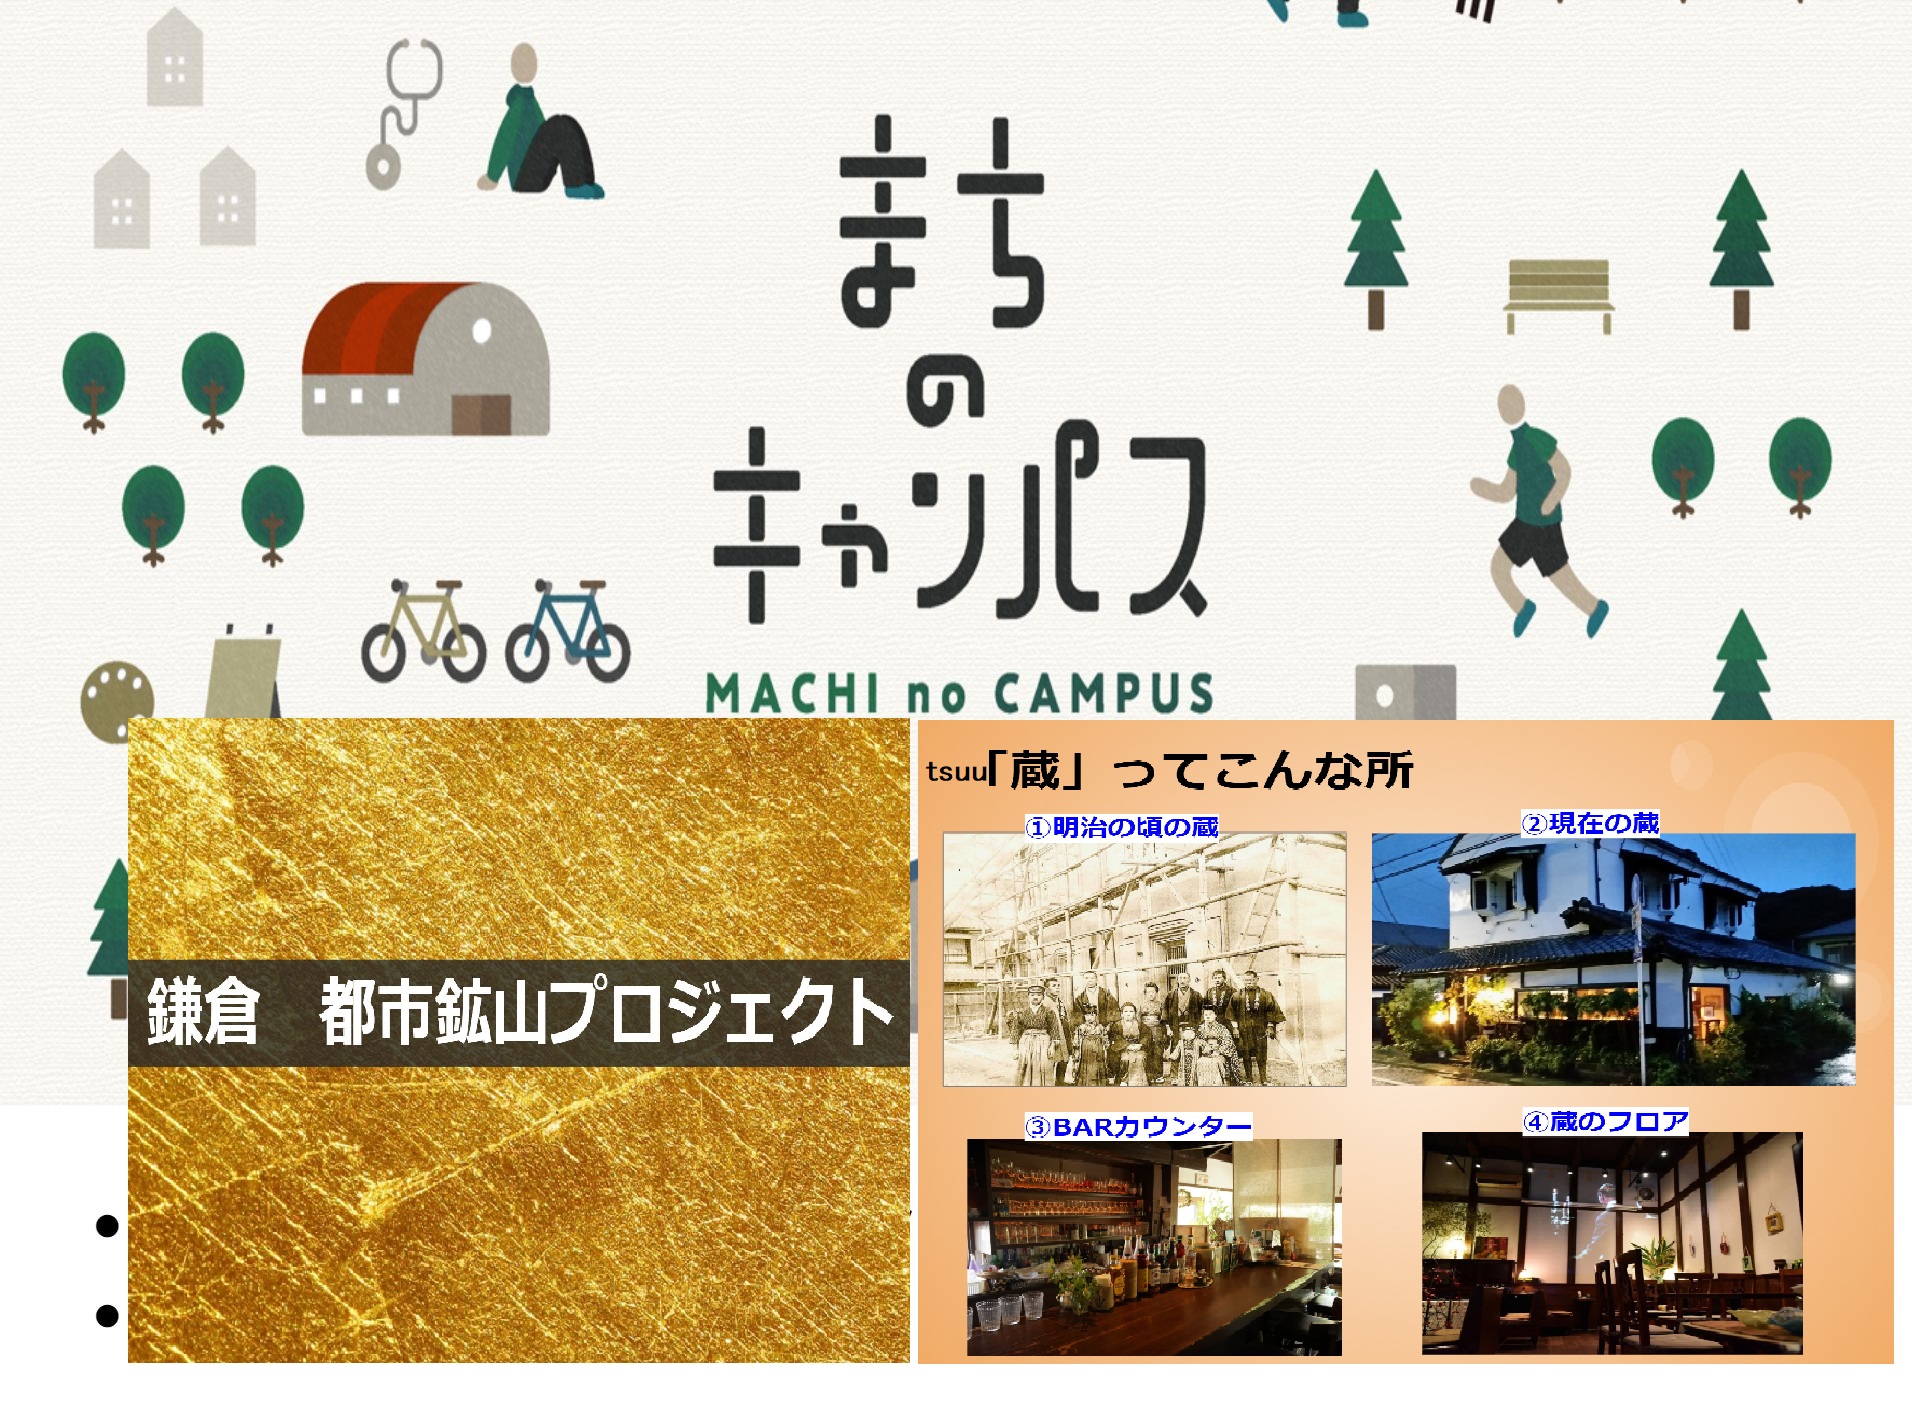 【2021年9月度定例会@zoom】「tsuuという歴史ある蔵での交流」「鎌倉 都市鉱山」「まちのキャンパス」！